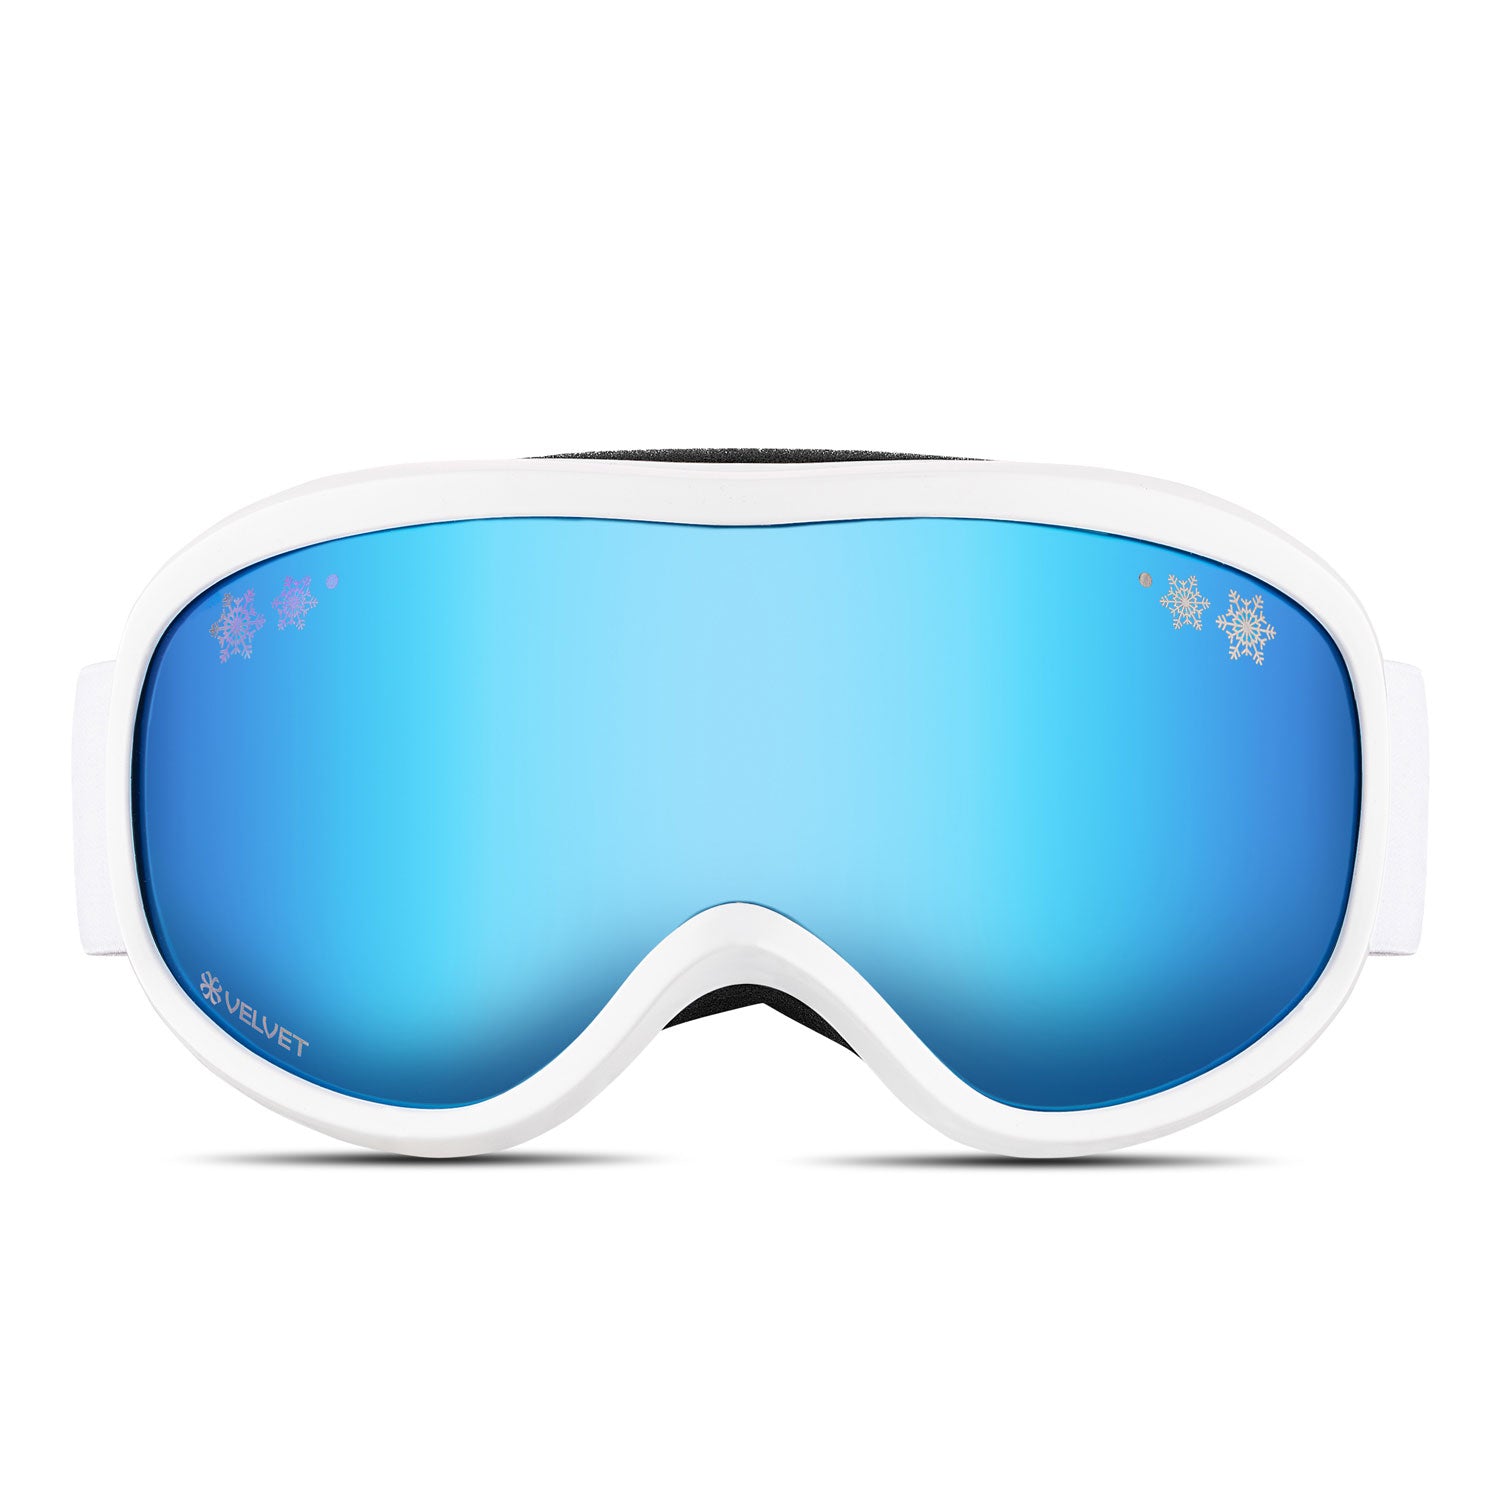 Mirrored ski goggles